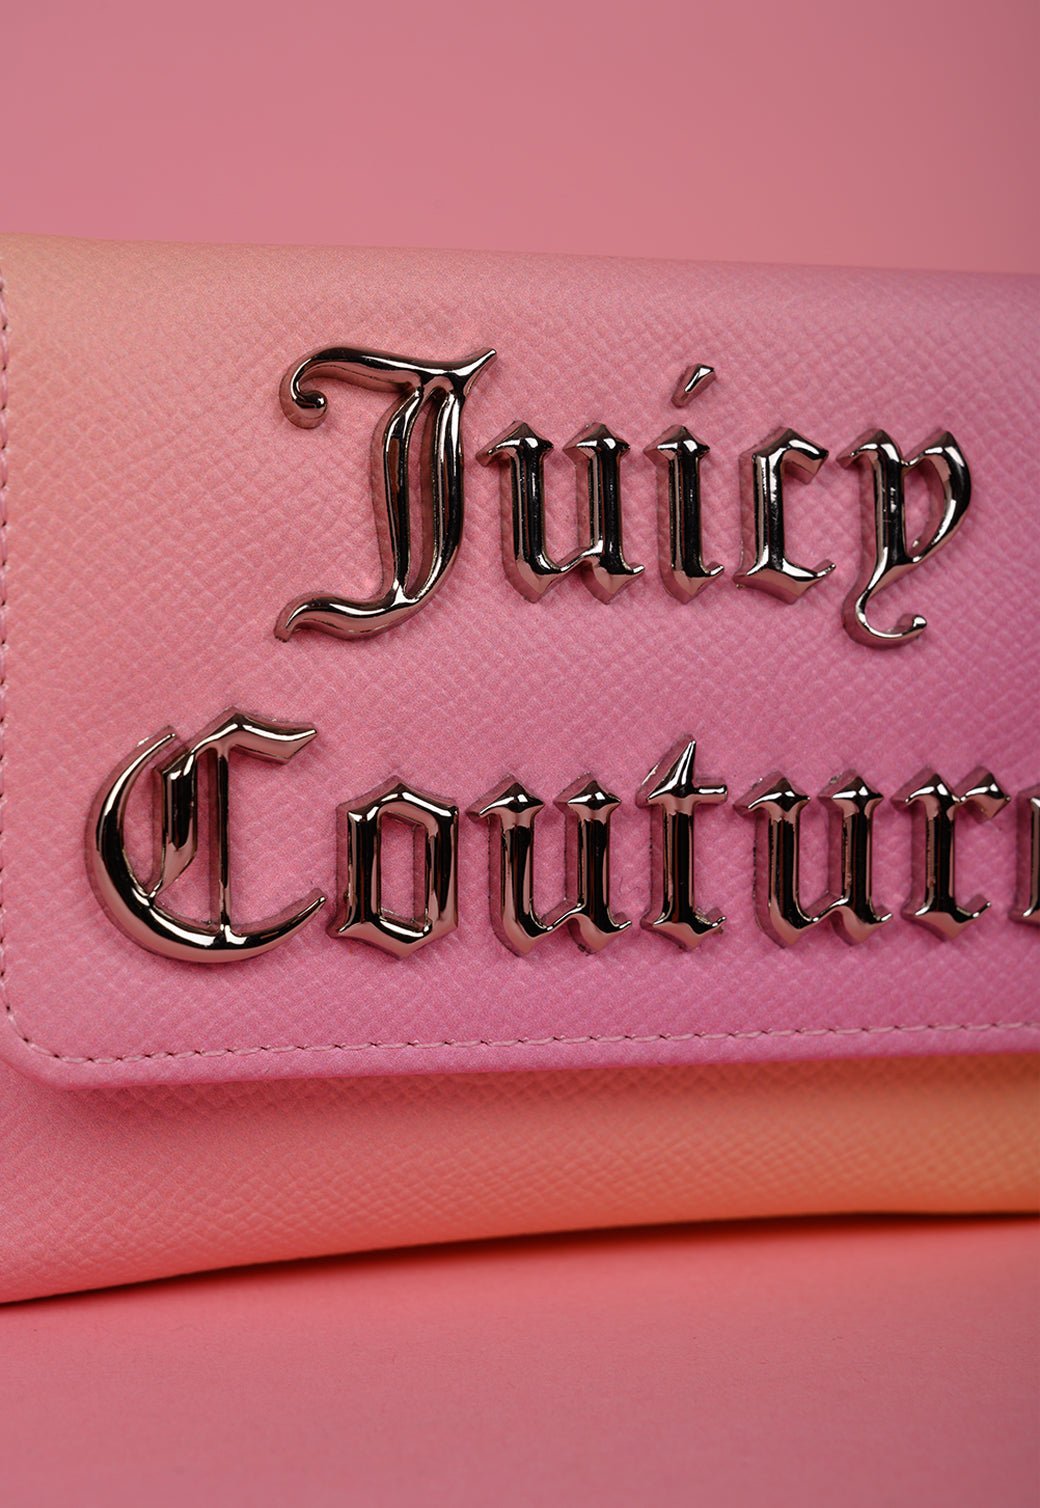 ארנק קטן עם לוגו מטאלי בולט - Juicy Couture